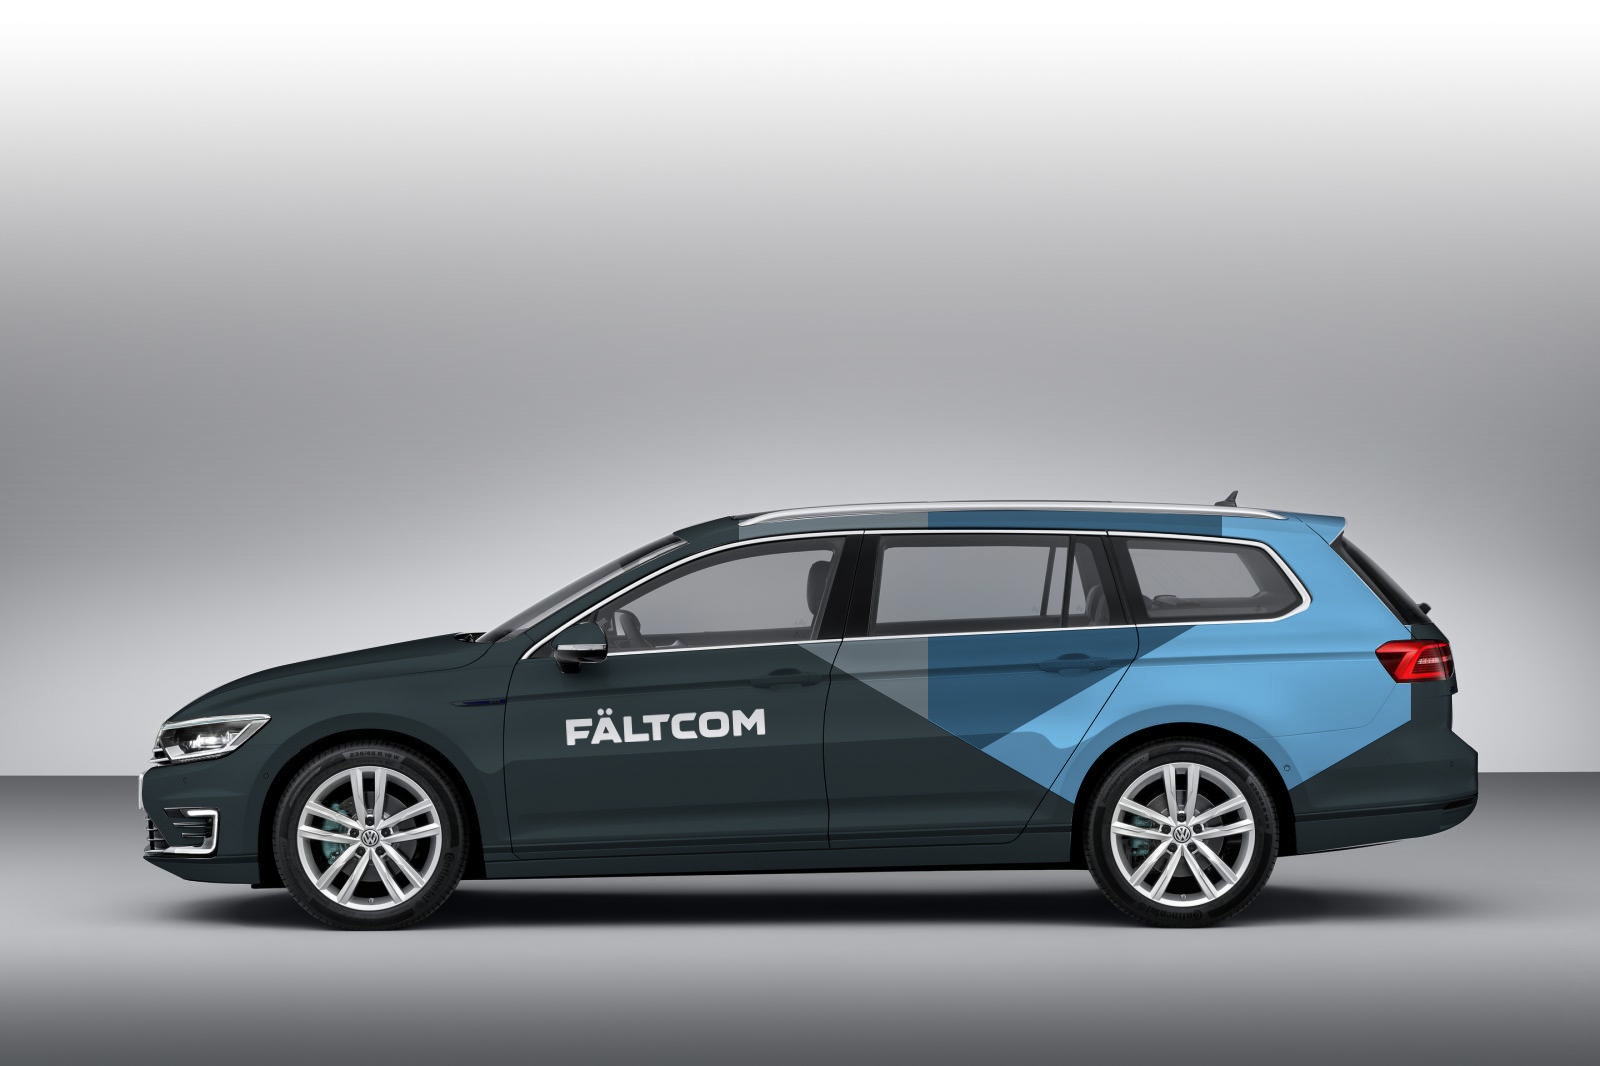 Faltcom_2015-Volkswagen-Passat-Wagon-Side-View-Wallpaper_grey_2